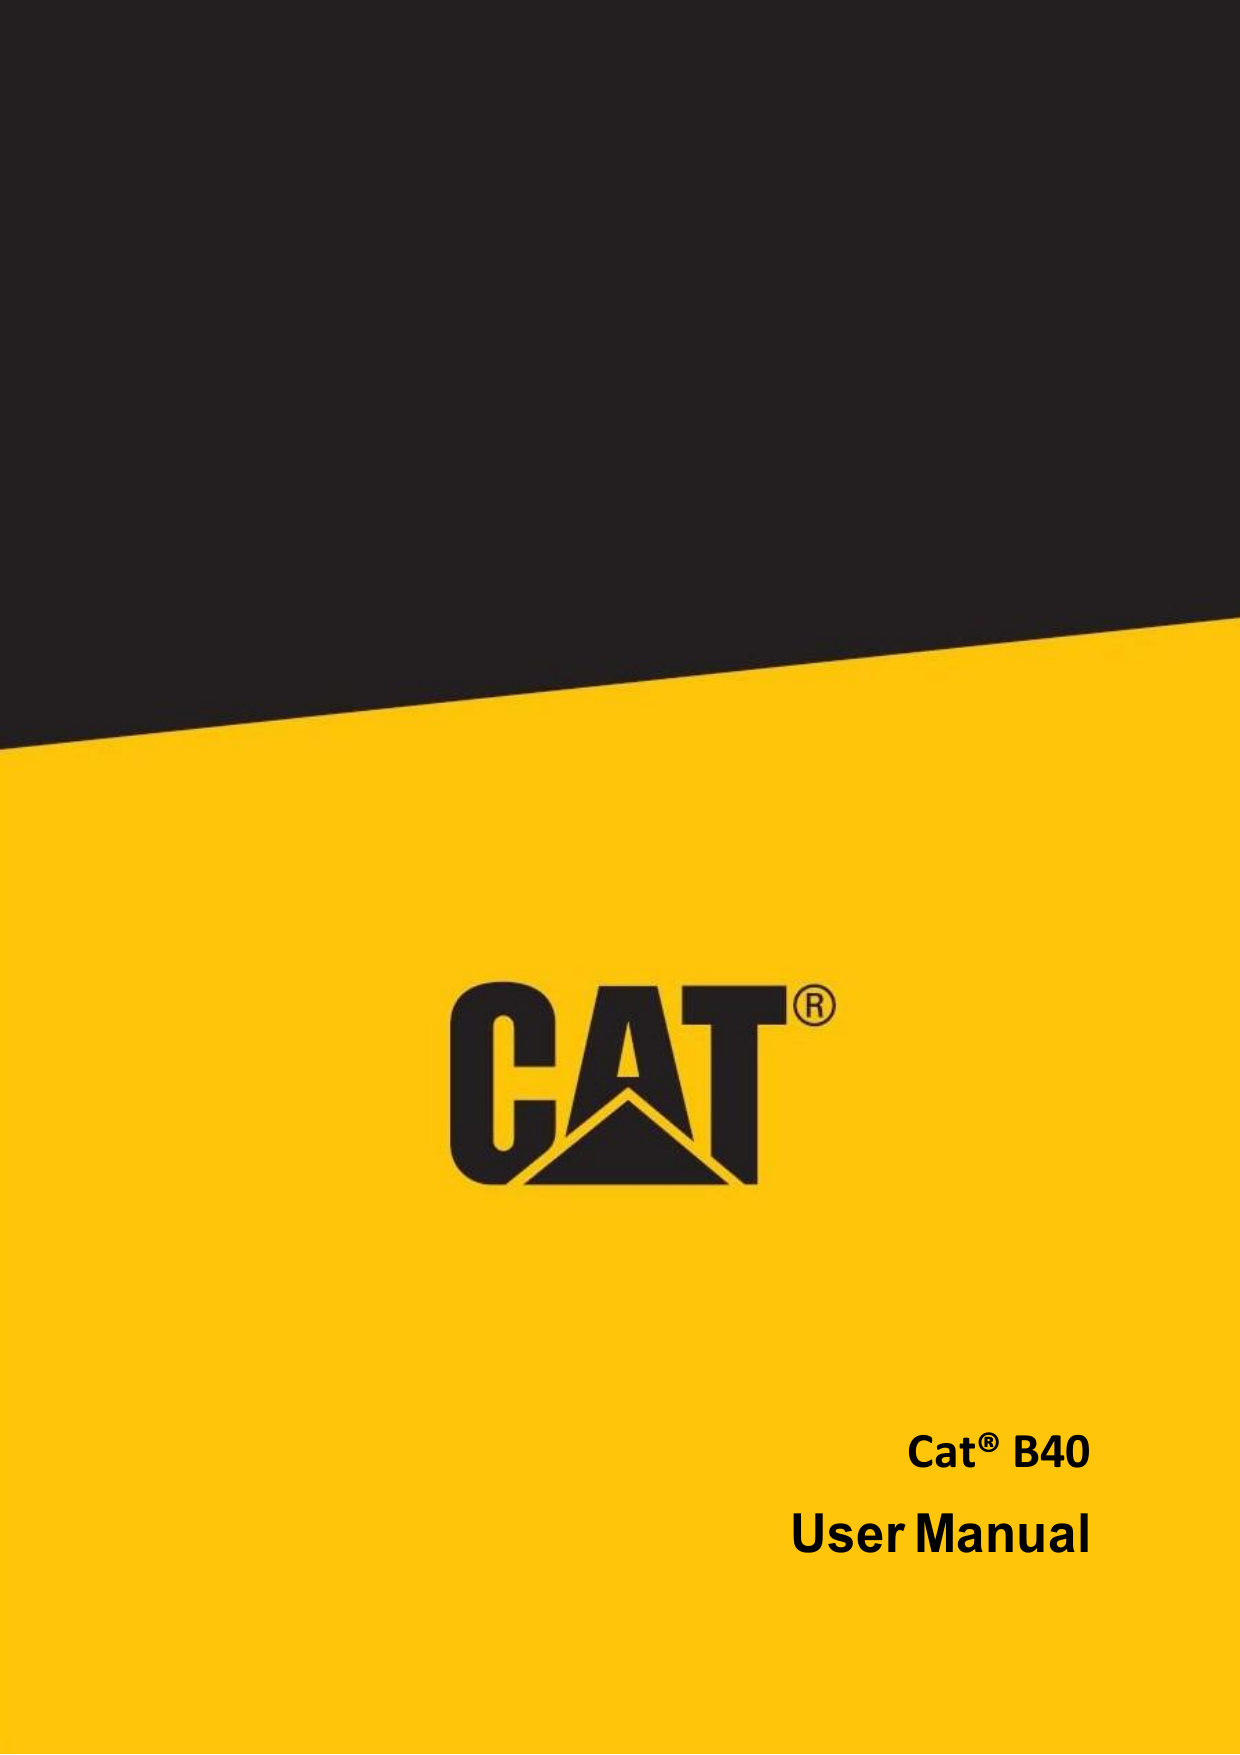 Cat® B40User Manual